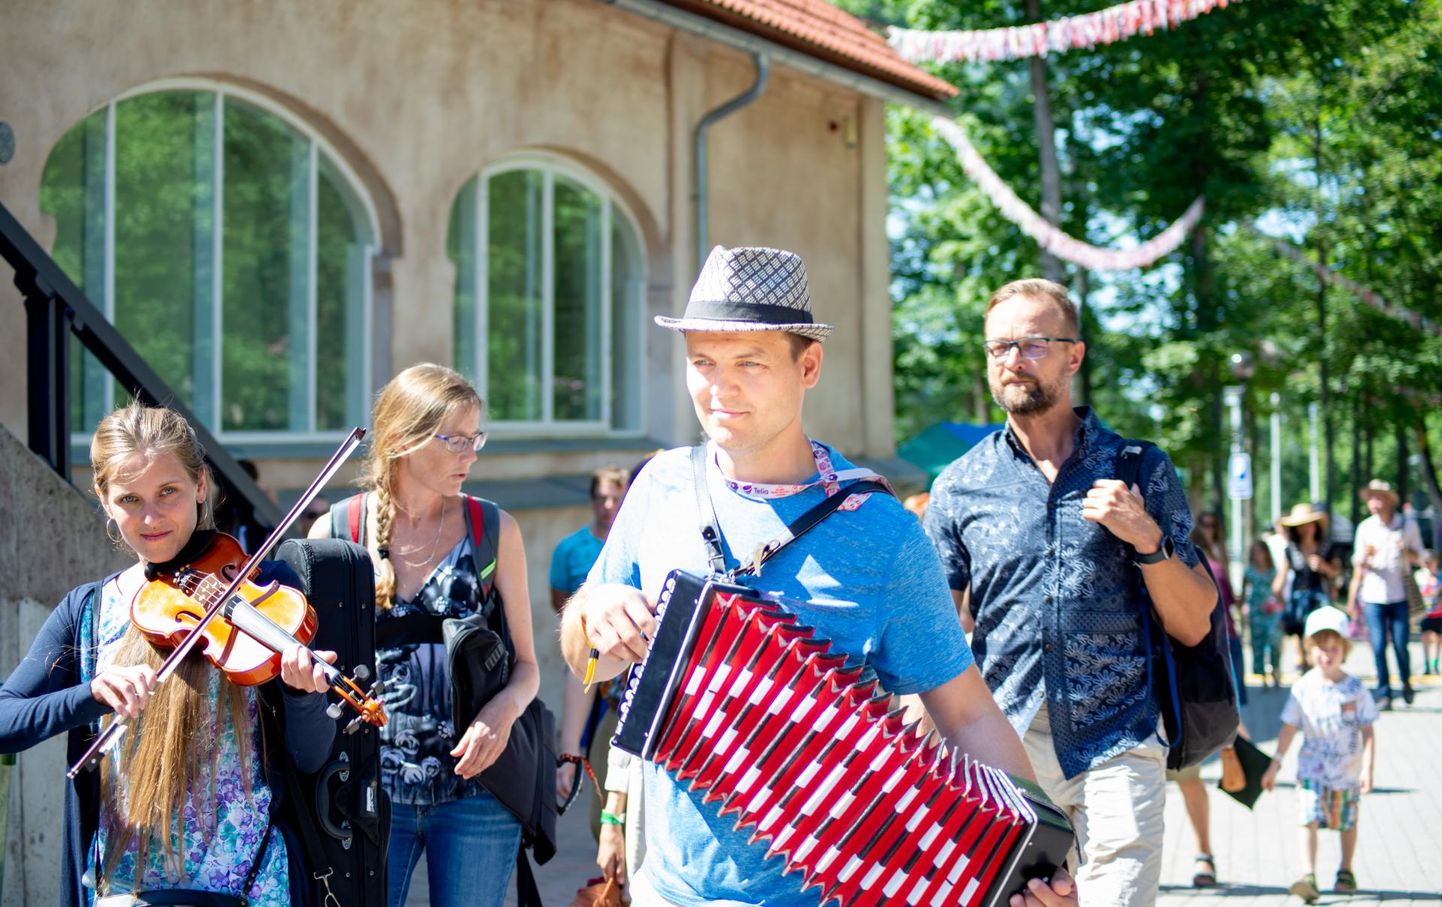 Kuigi selle aasta Viljandi pärimusmuusika festival oli väiksem, sai kuulata rohkelt elavat muusikat tantsumajas, tänaval ja aida terrassil.